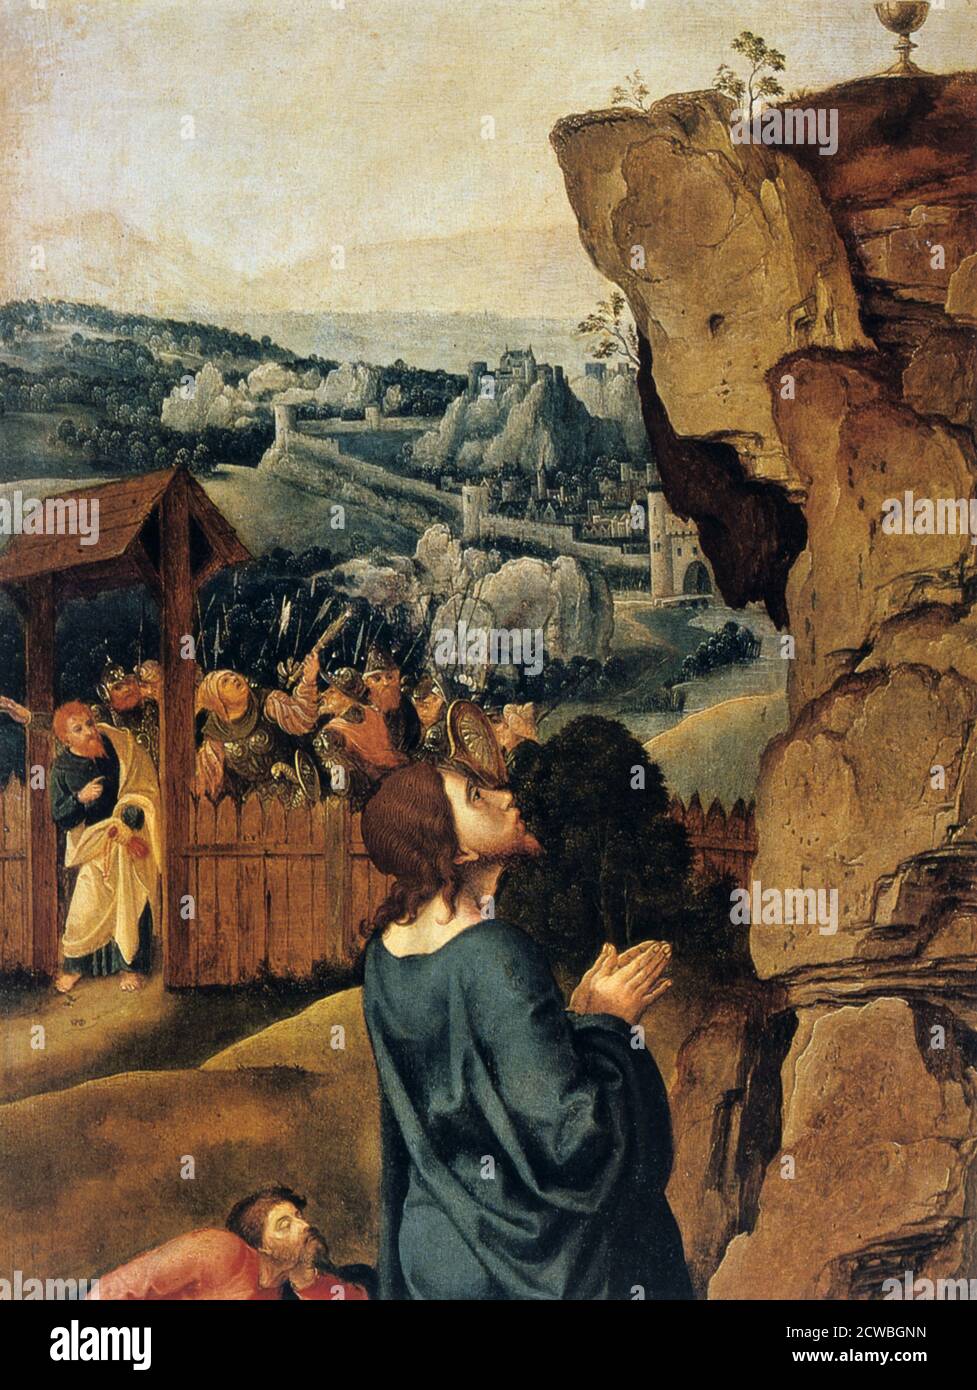 The Agony in the Garden', détail, 1527-1530. Dans le jardin de Gethsemane, le Christ s'agenouille et lève les yeux vers le calice qui se trouve sur l'affleurement de la roche, qui symbolise le calice du destin. Le Christ prie Dieu le Père, rongé par la peur de sa souffrance et de sa mort futures, de modifier le sort qui lui est fixé. En arrière-plan, nous voyons une foule de soldats, de scribes et de pontife armés d'épées, de lances, de landes et de torches, dirigés par Judas et se dirigeant vers le jardin de Gethsémané pour arrêter le Christ. Banque D'Images